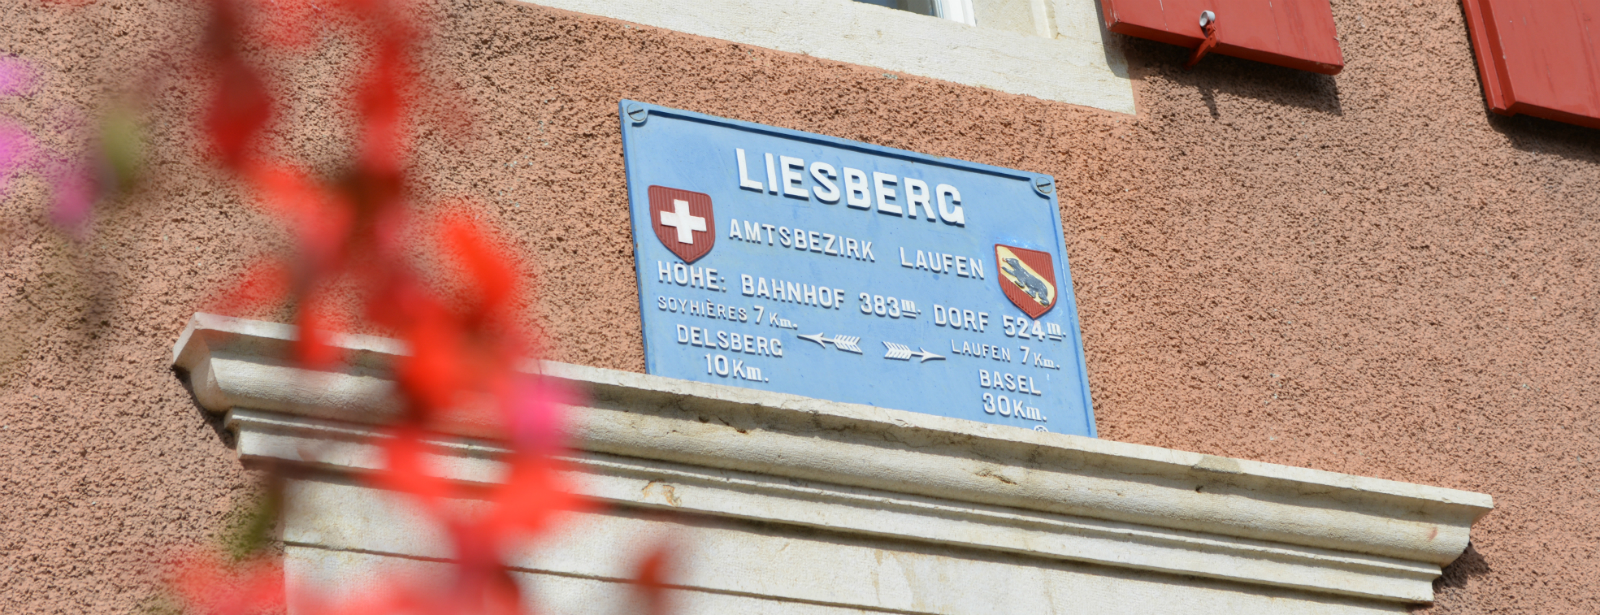 (c) Liesberg.ch